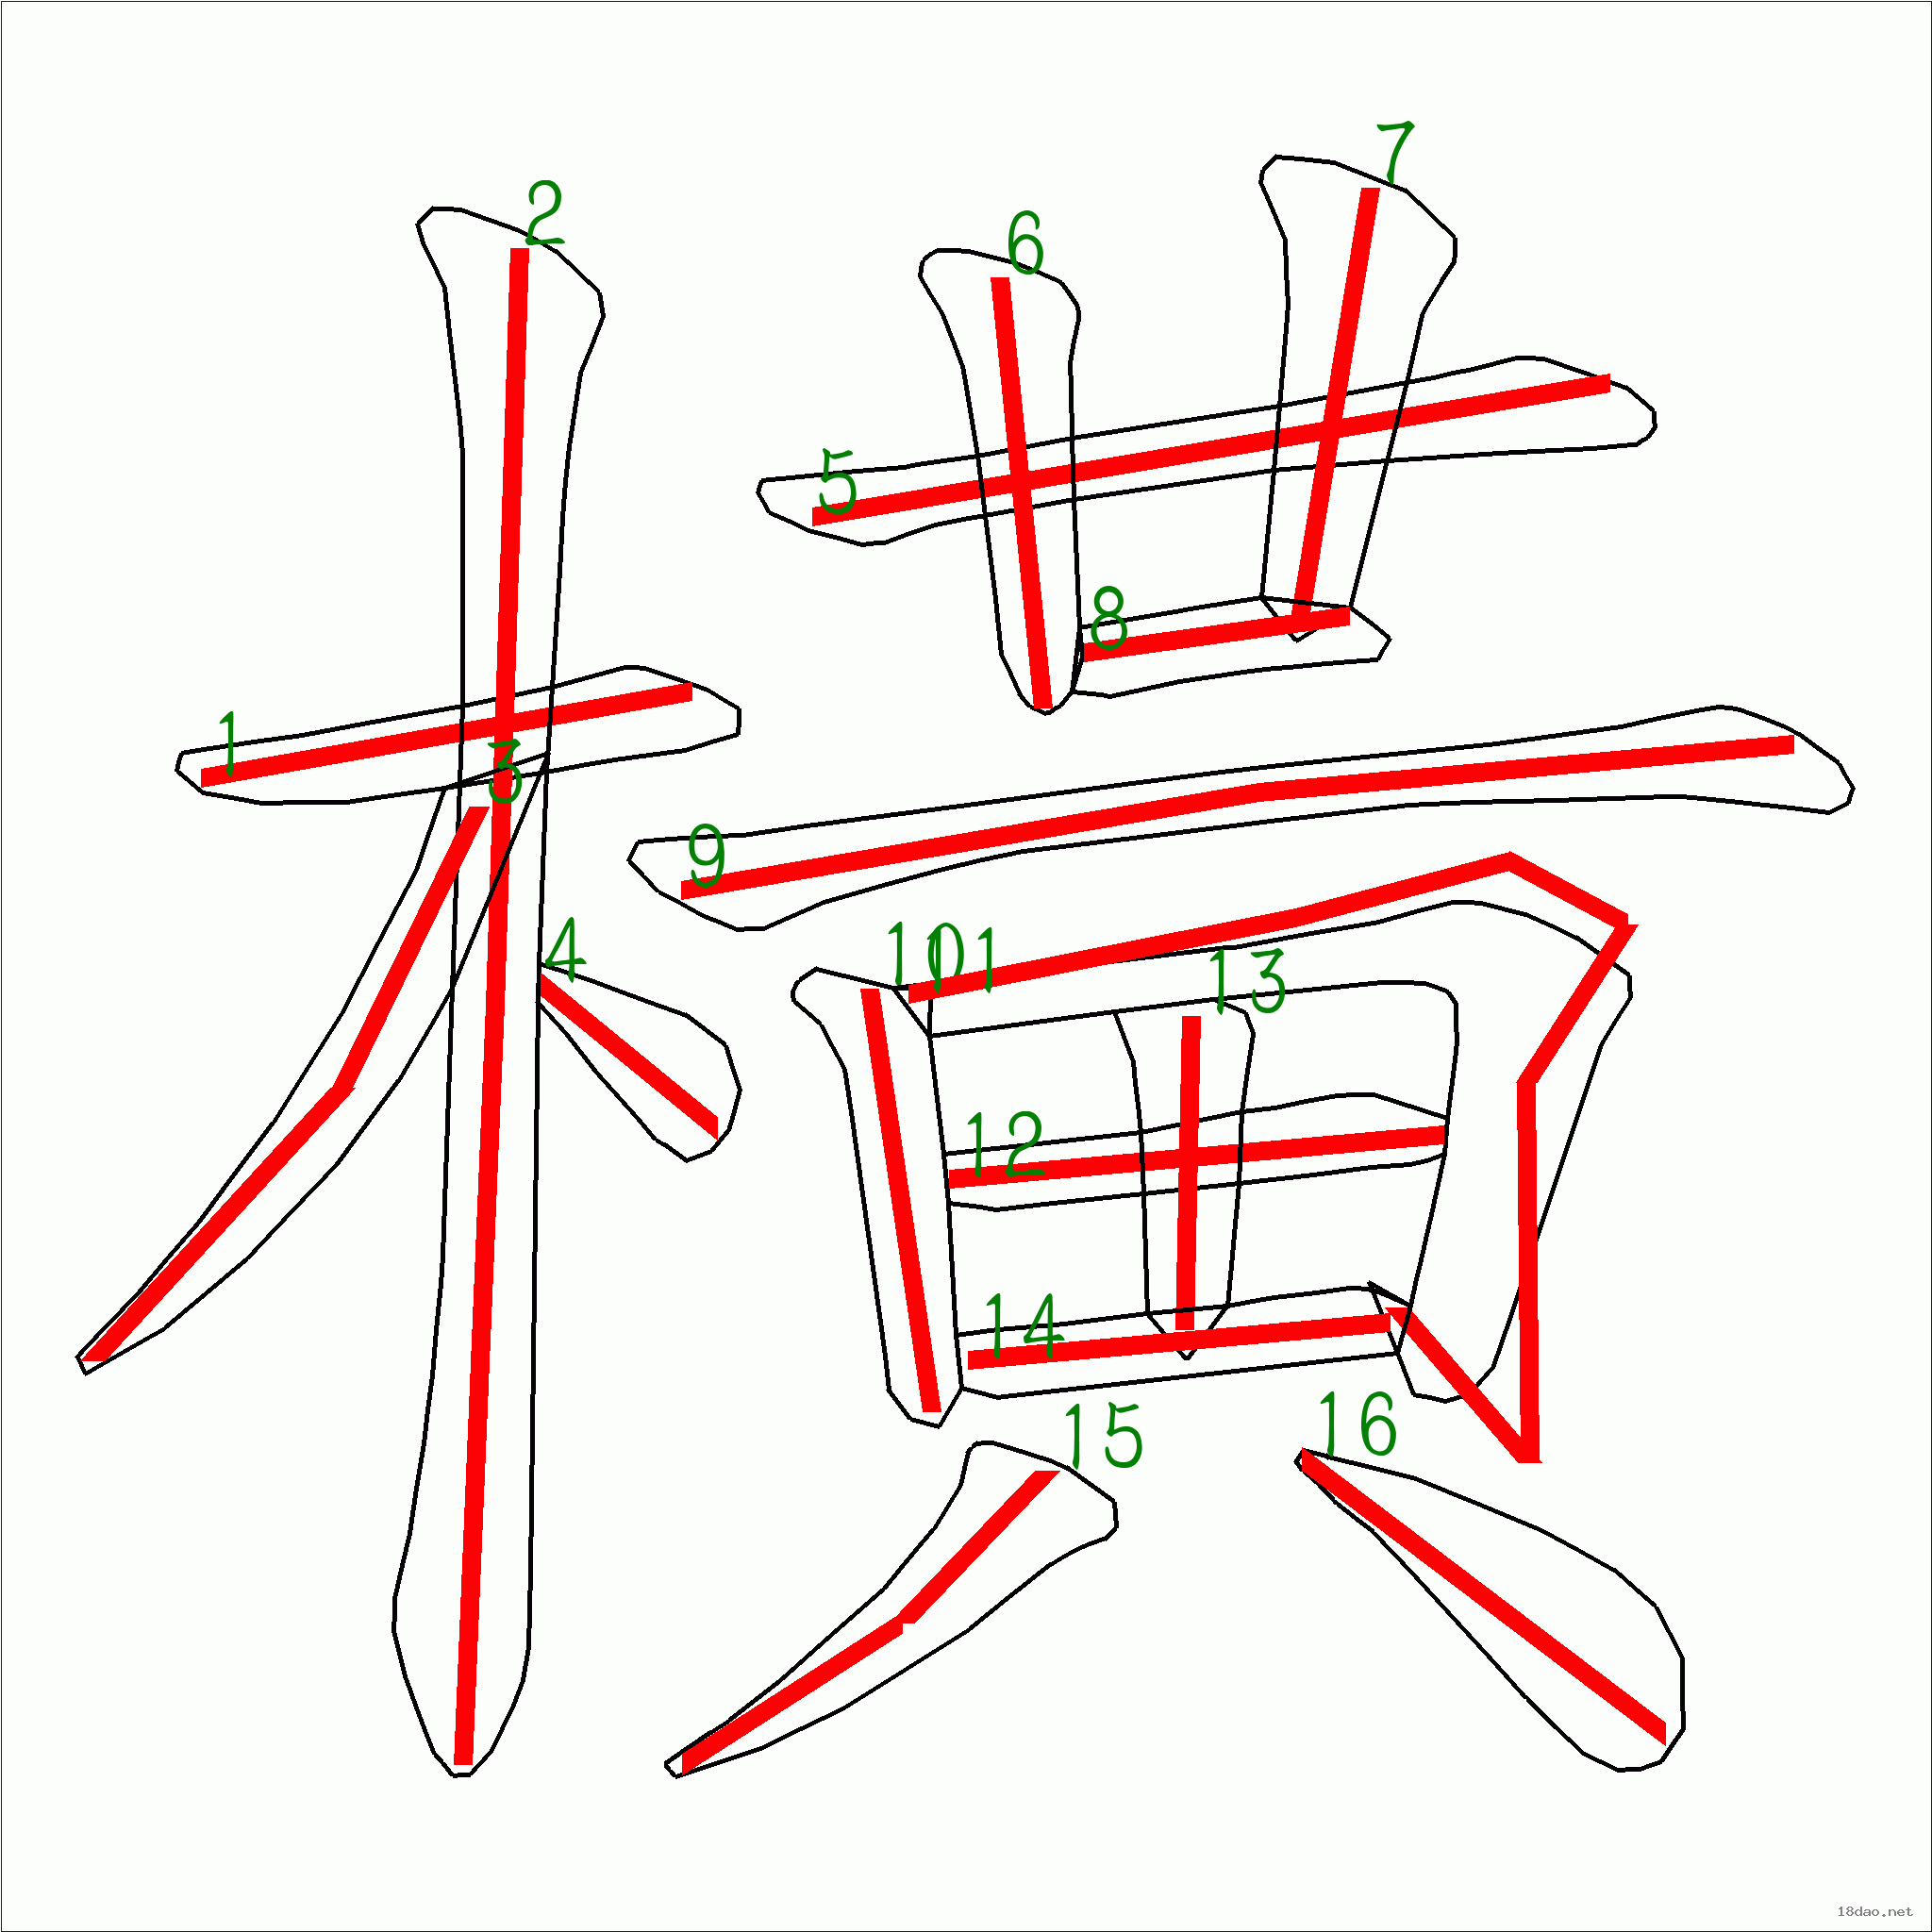 汉字笔画横图片